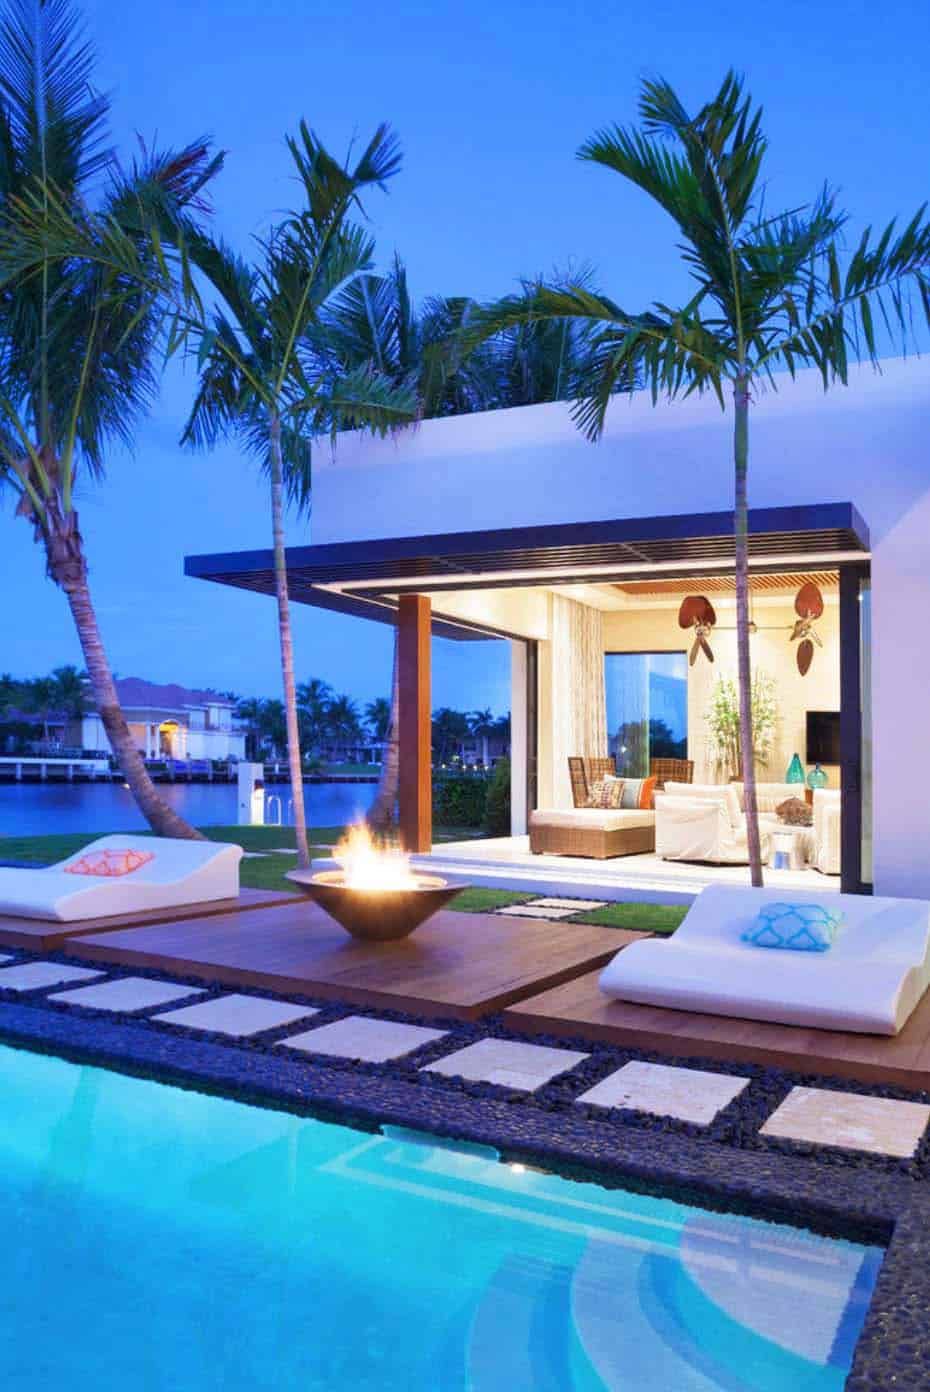 Sitzecken Im Garten Mit überdachung Elegant 555 Best Pool Paradise Images In 2020